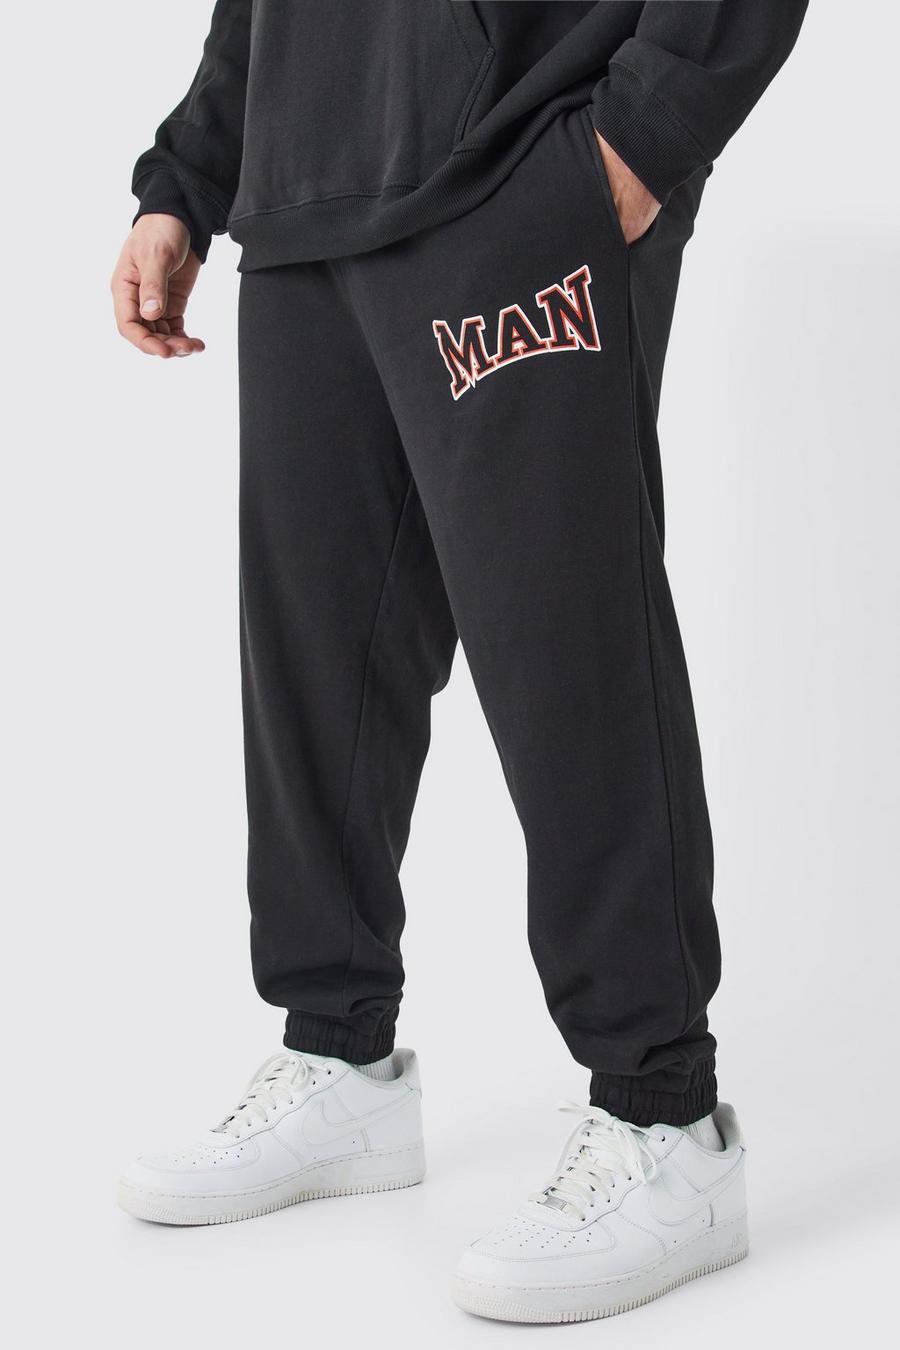 Pantaloni tuta Plus Size Core stile Varsity Man neri, Black